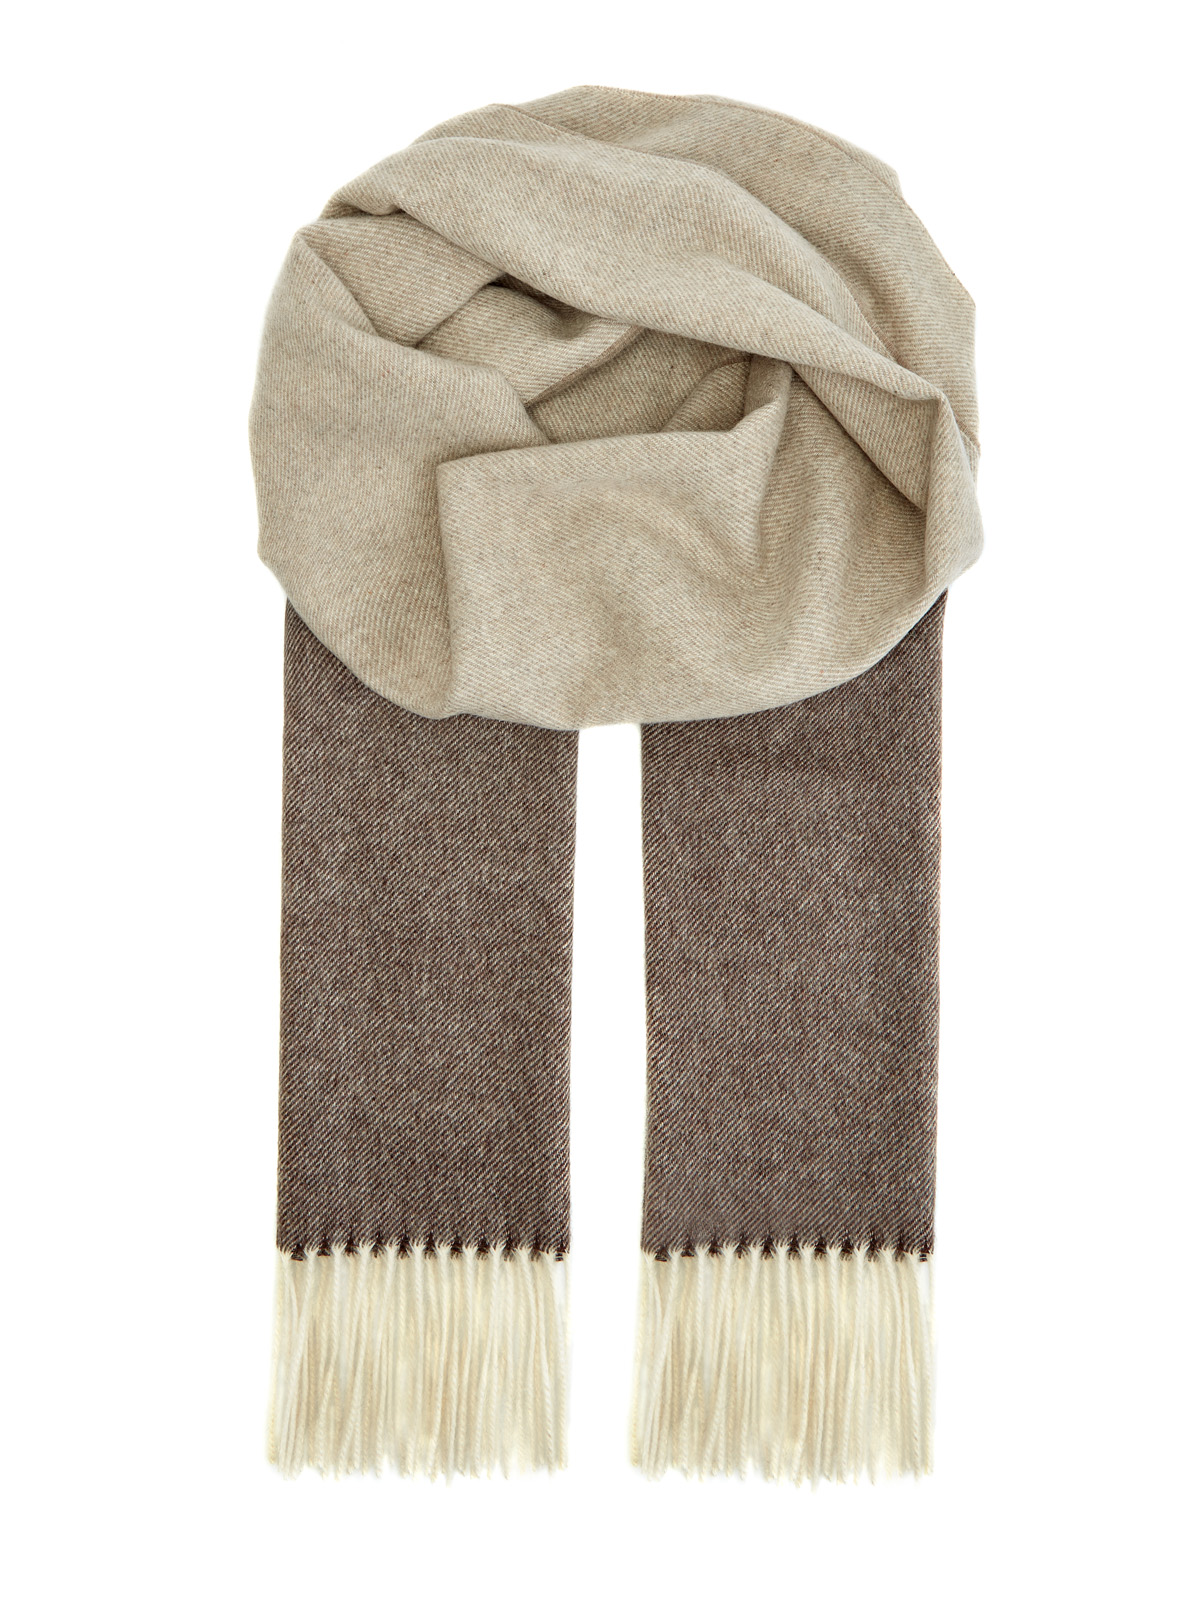 Кашемировый шарф ручной работы в бежево-коричневой гамме